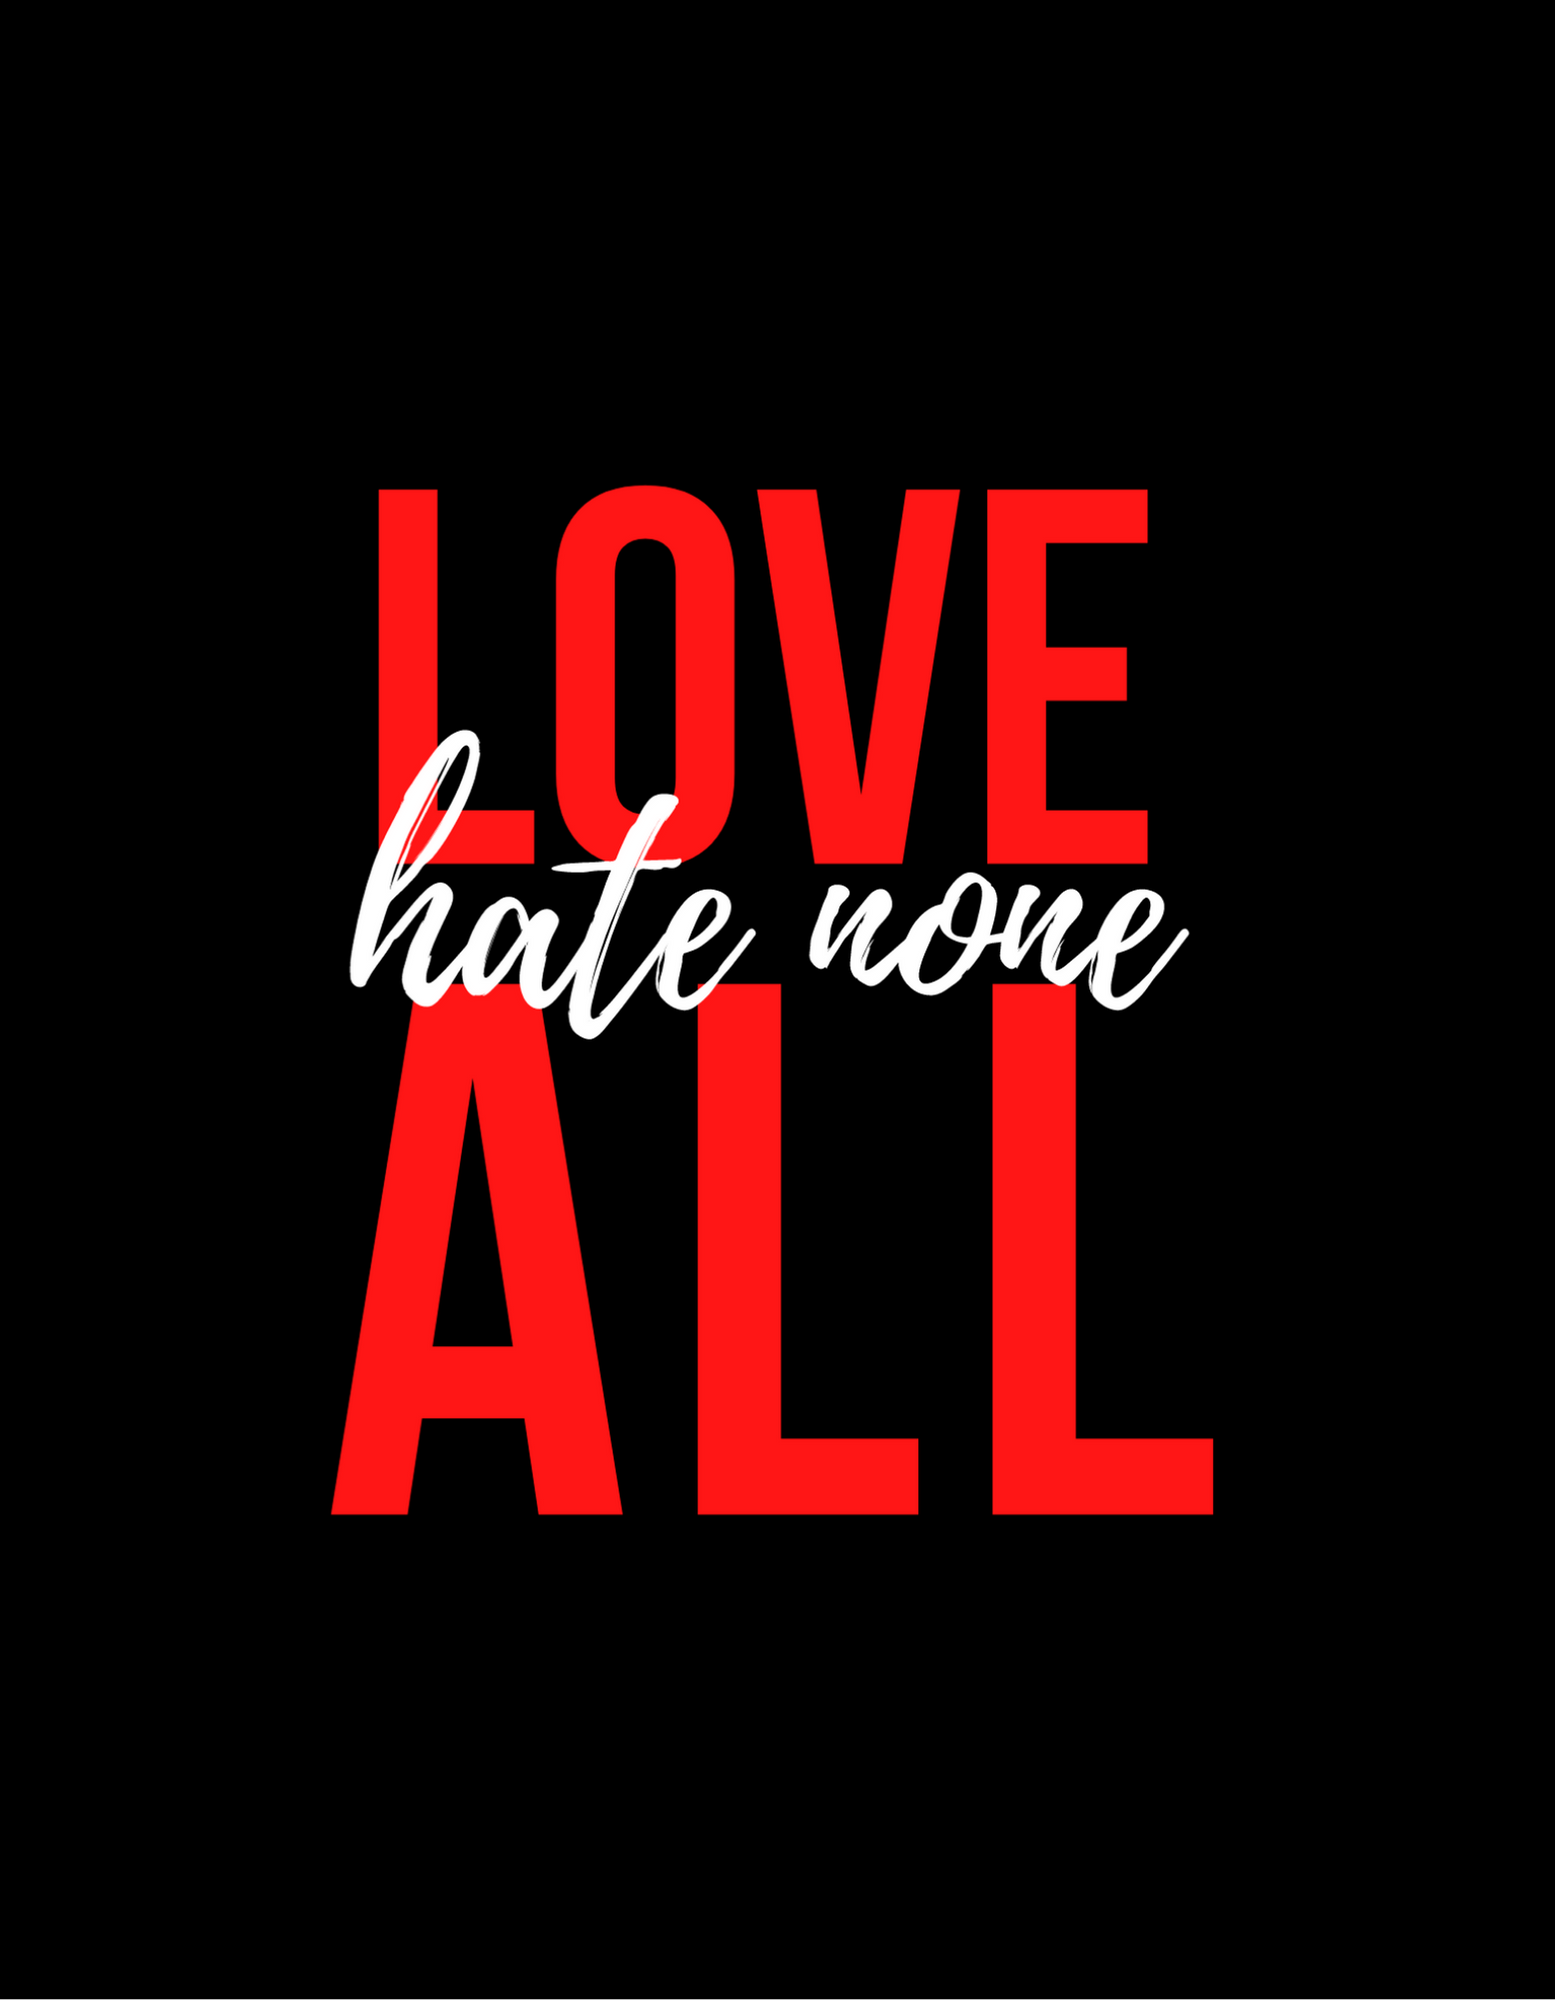 Love All Hate None Sticker